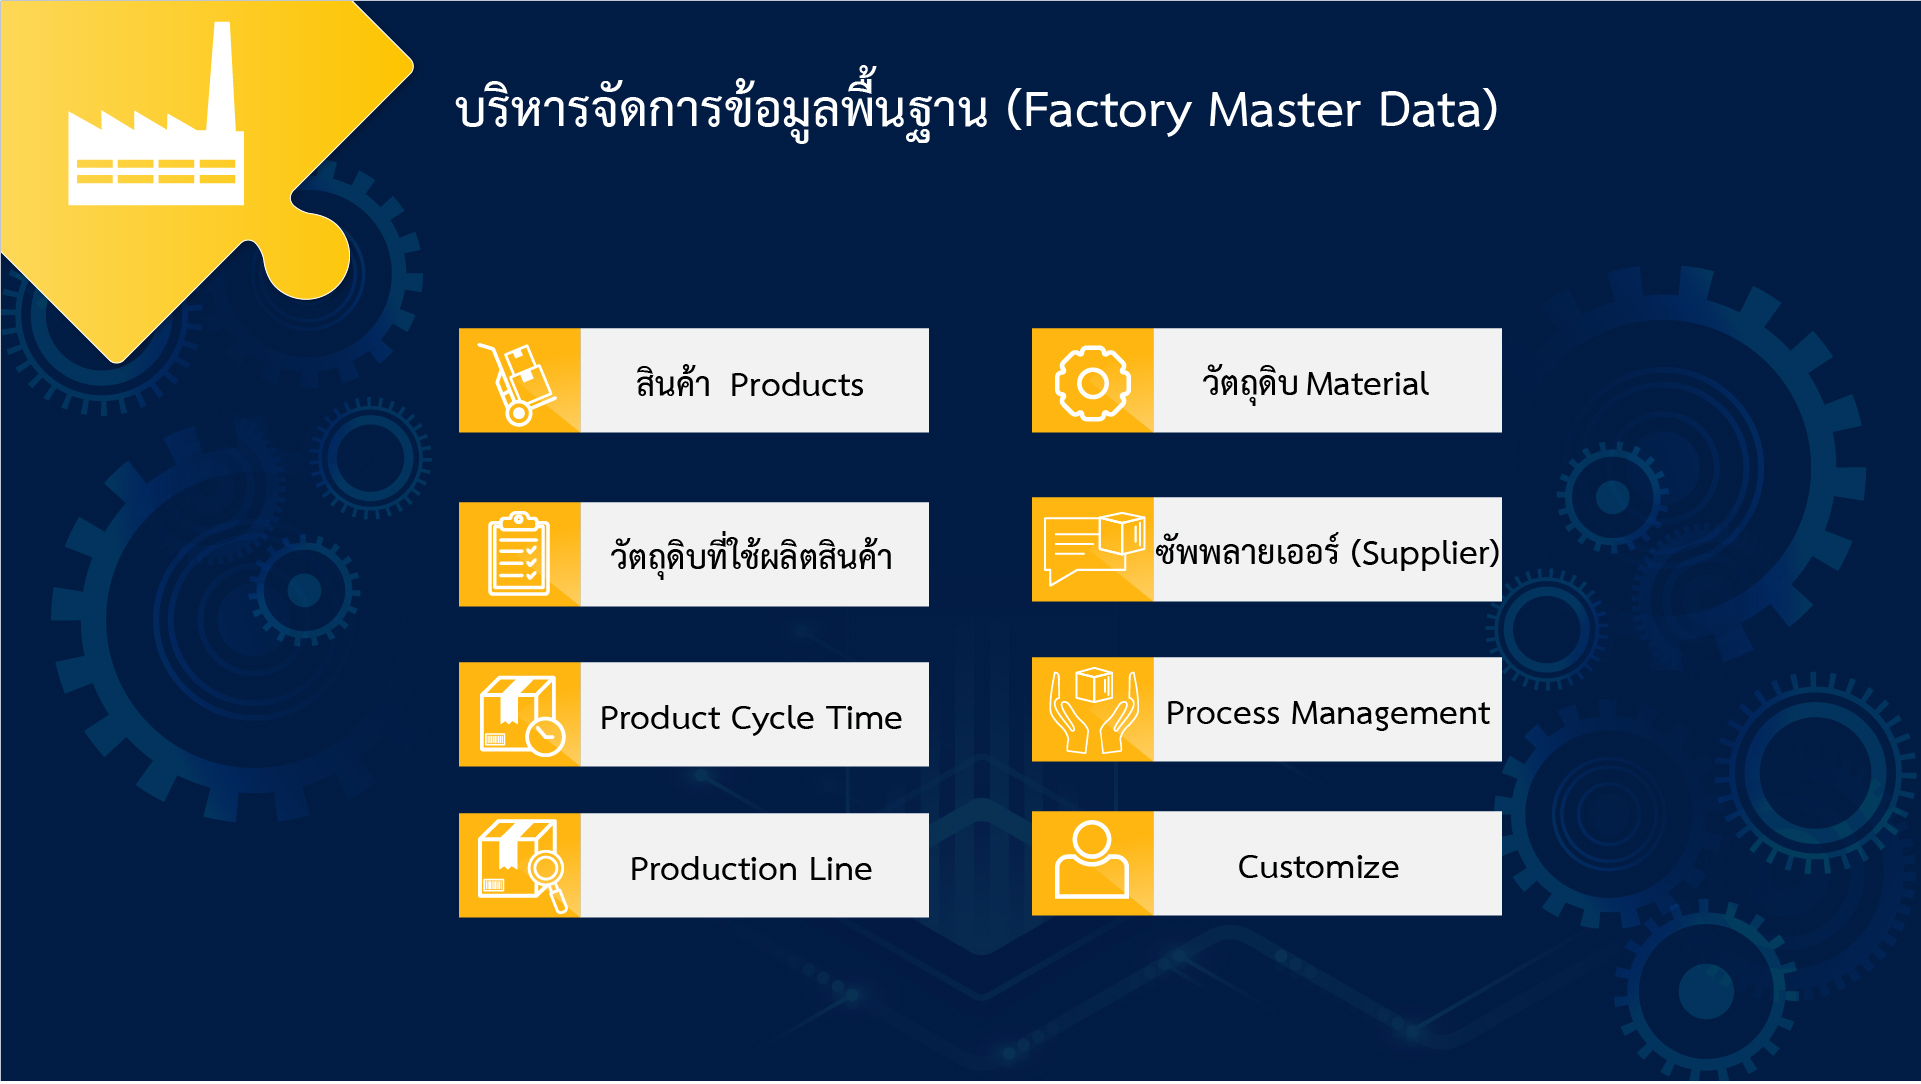 บริหารจัดการข้อมูลพื้นฐาน (Factory Master Data)